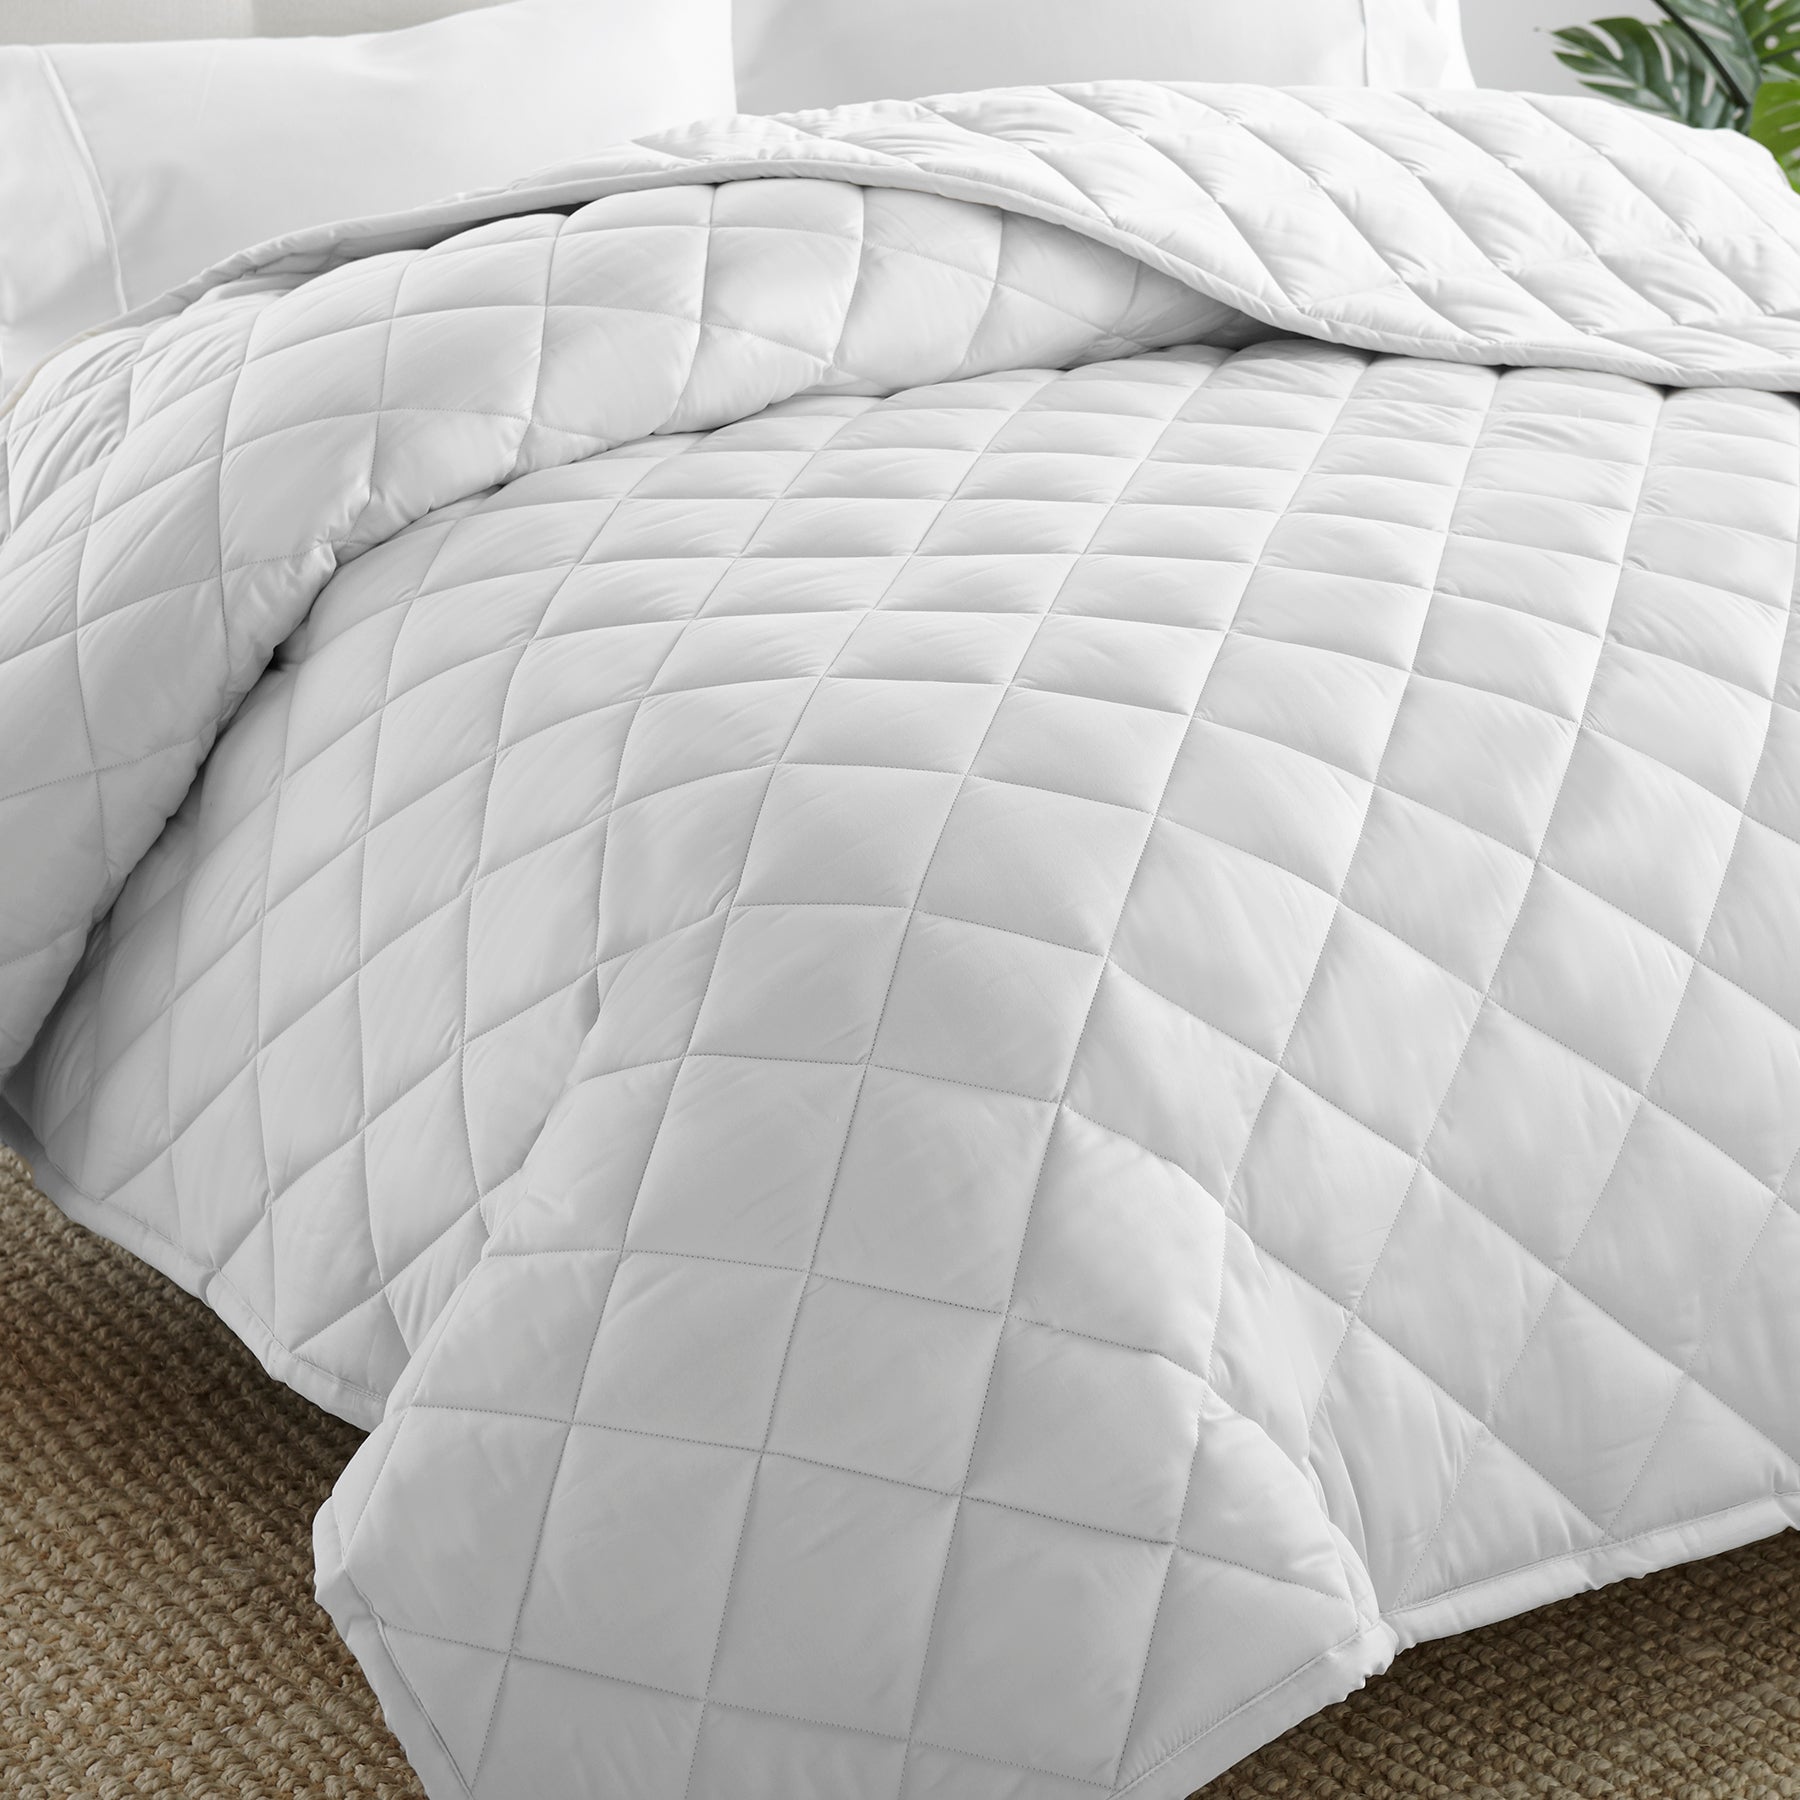 Organic Cotton Thin Comforter (White Color)